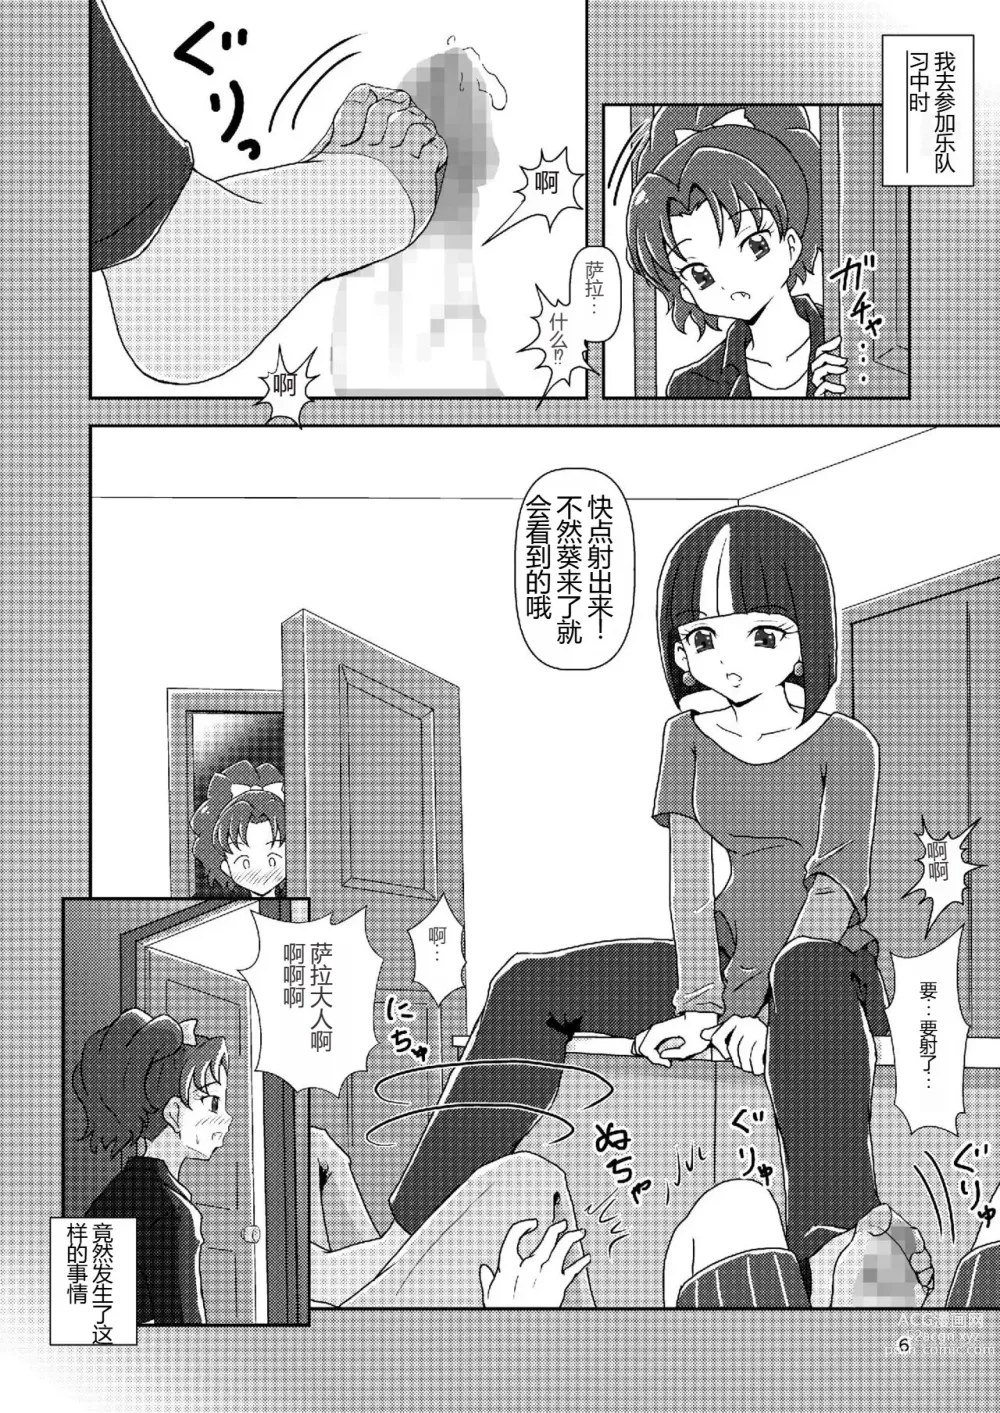 Page 5 of doujinshi Kirakira Zuricure Ashi Mode